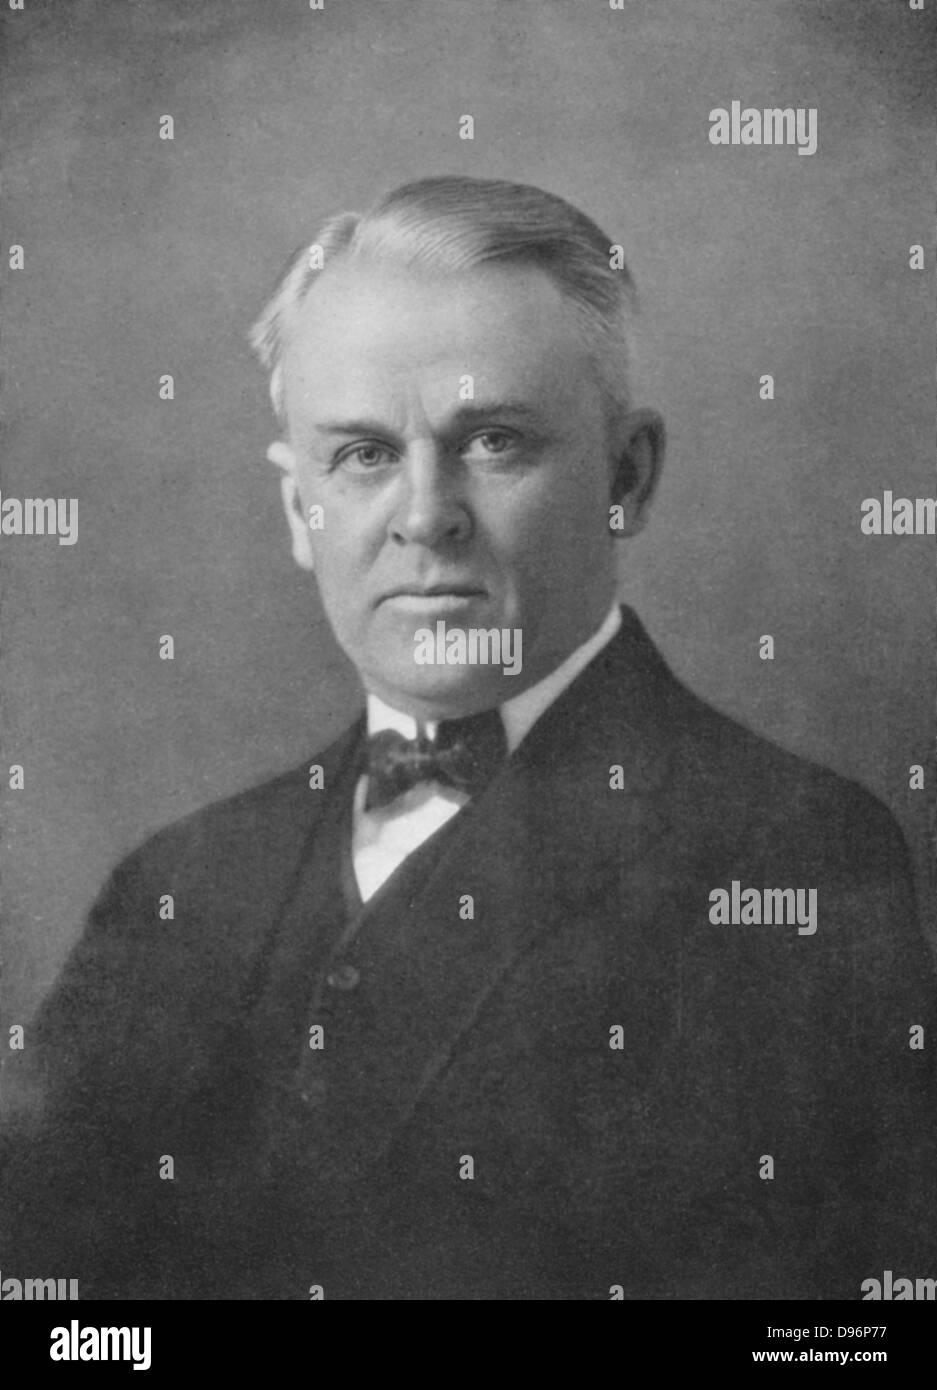 Robert Andrews Millikan (1868-1953) fisico americano. Xx secolo. Assegnato il premio Nobel per la fisica nel 1923 per la determinazione della carica dell'elettrone. In 1925 ha coniato il termine "raggi cosmici". Foto Stock